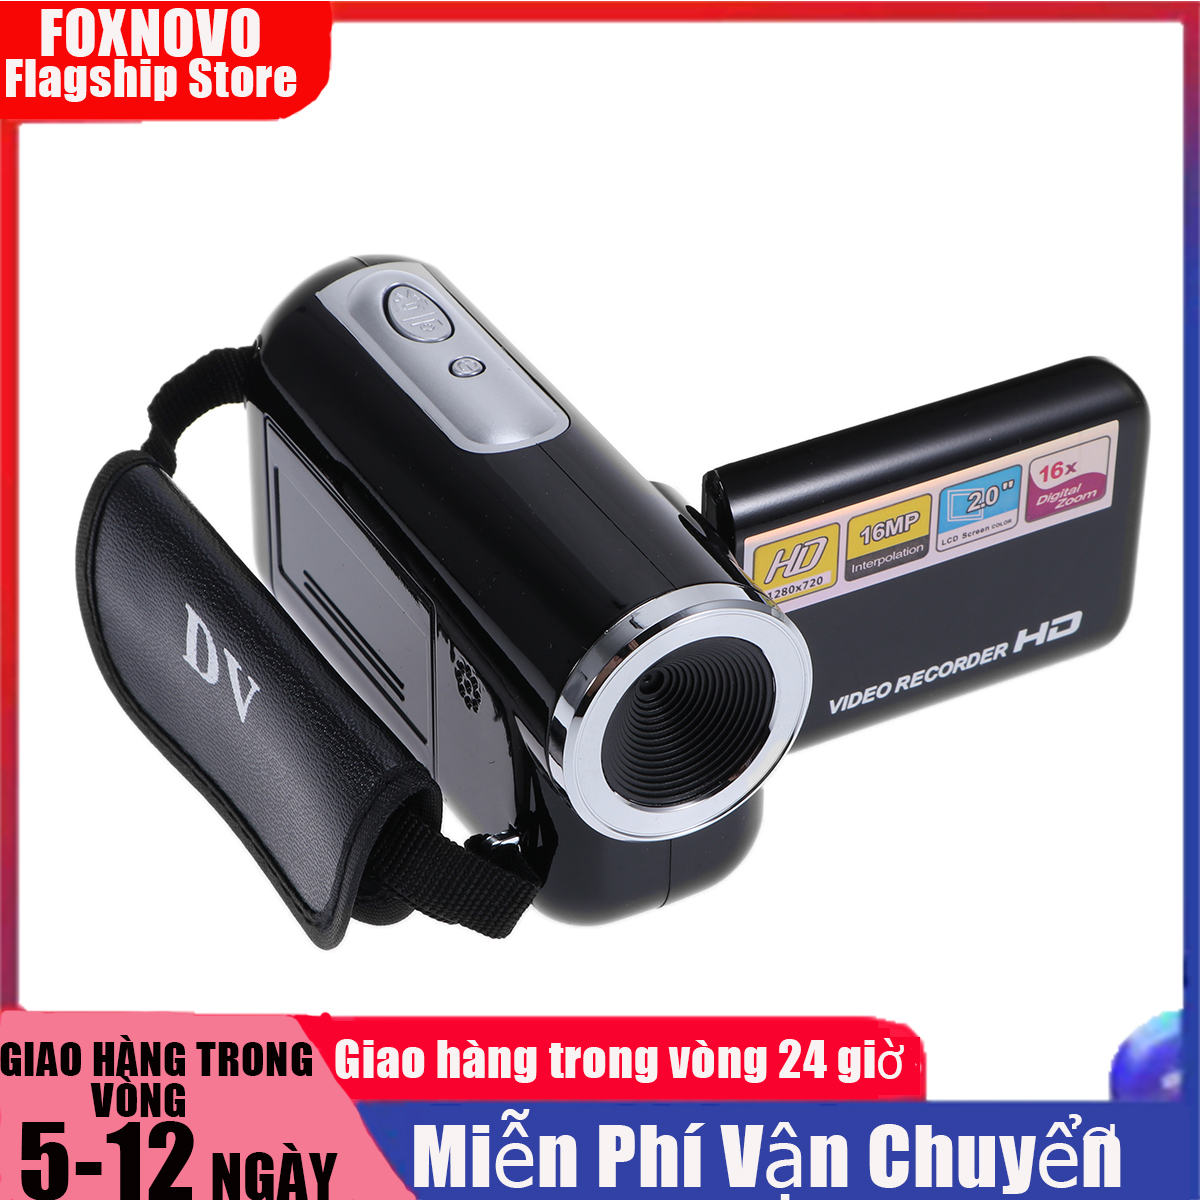 16MP 16X Máy quay hình kỹ thuật số cầm tay loại nhỏ (màu đen) 2.0 inch tích hợp đèn flash,...